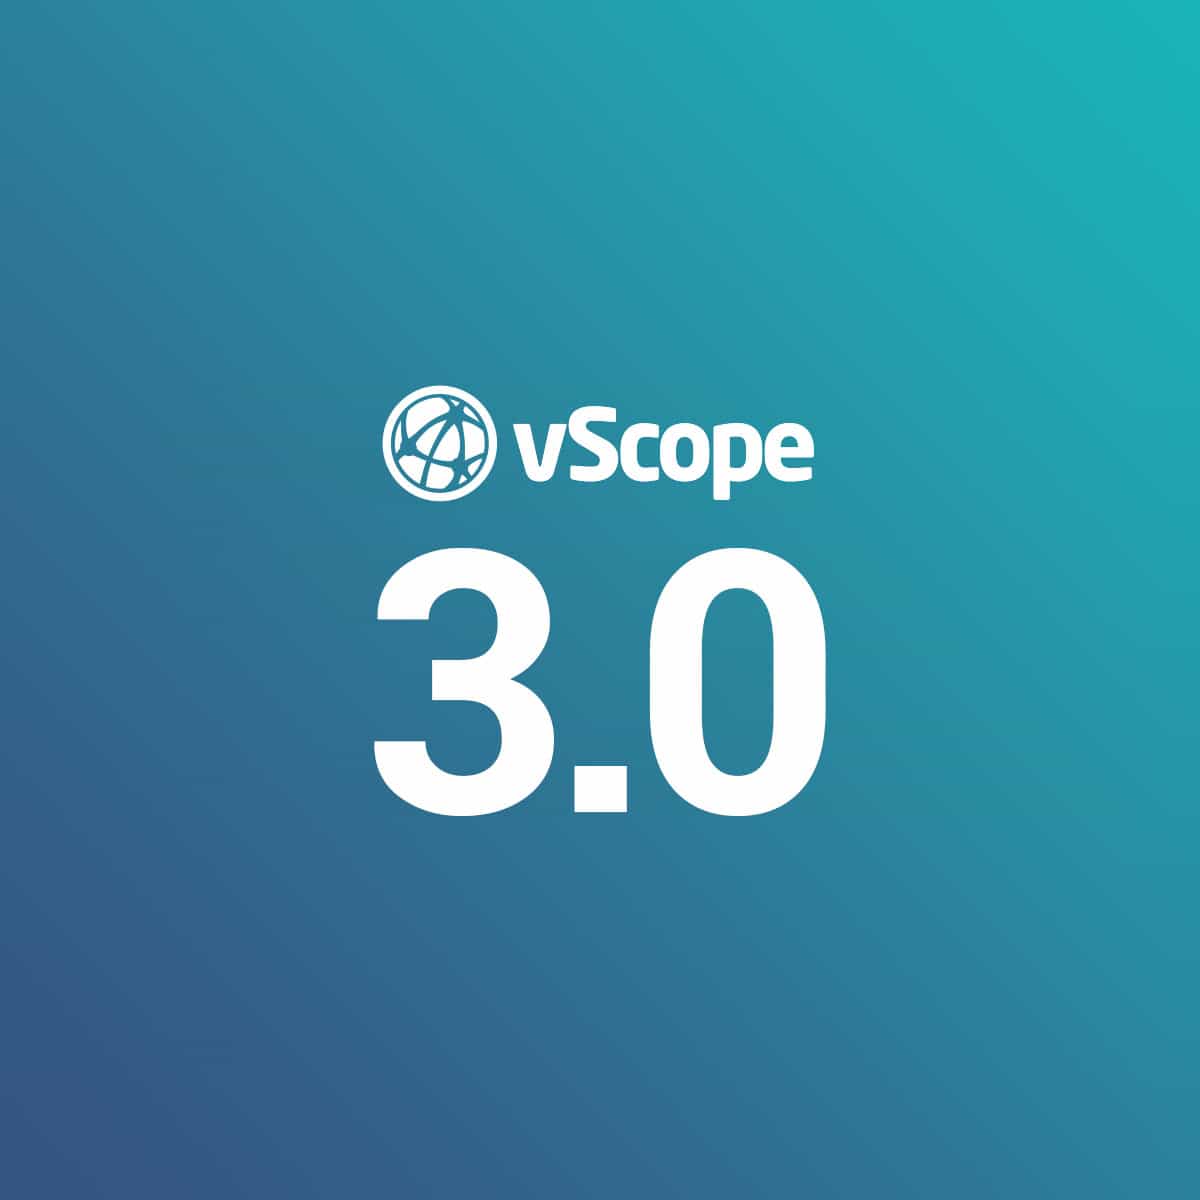 vscope 3.0